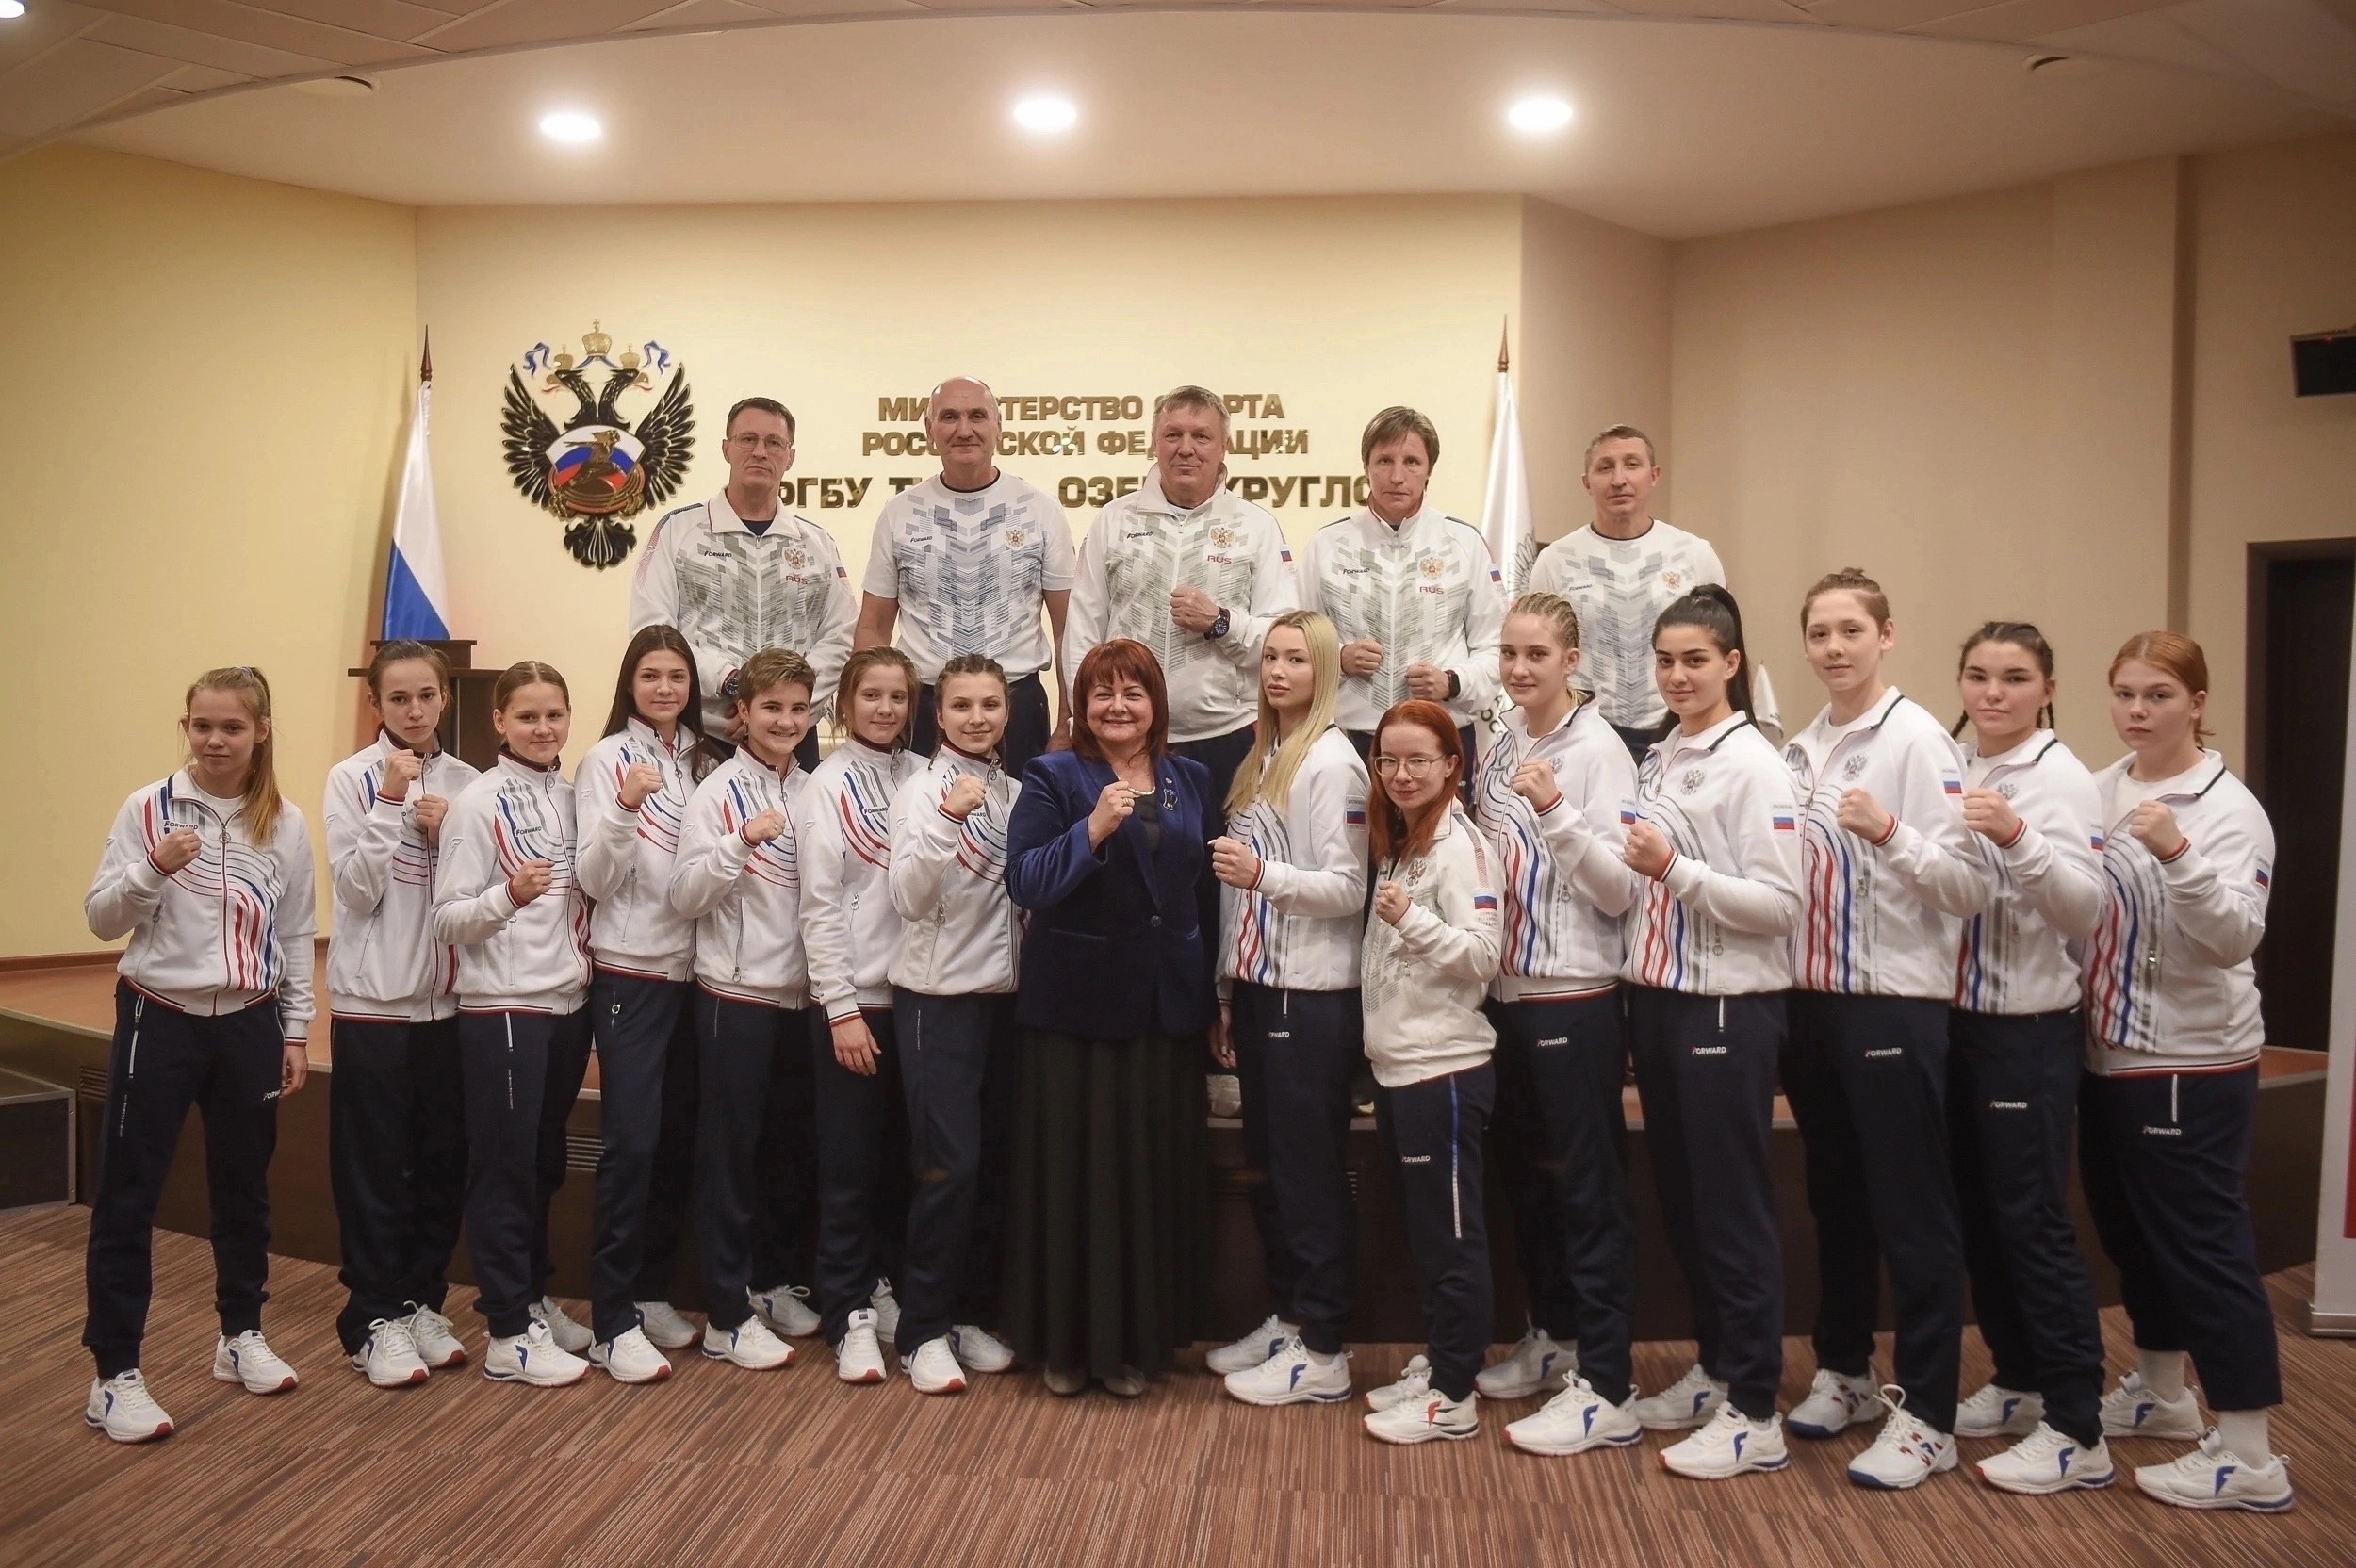 Мария Казакова, член сборной команды России,   в составе юношеской команды сборной страны прибыла в г